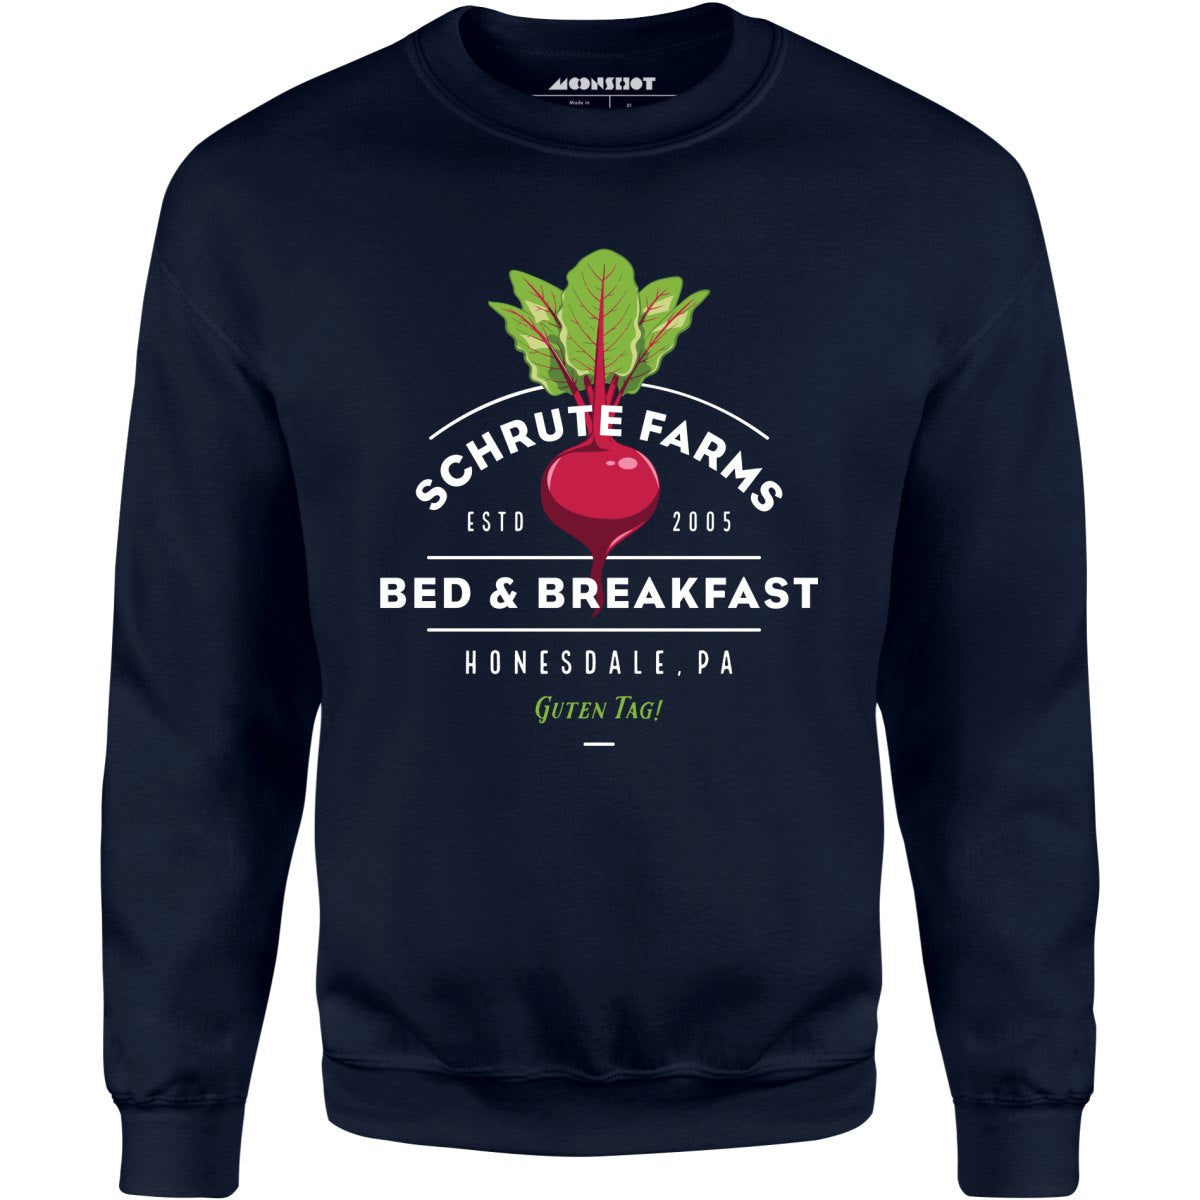 Schrute Farms Bed & Breakfast - Unisex Sweatshirt